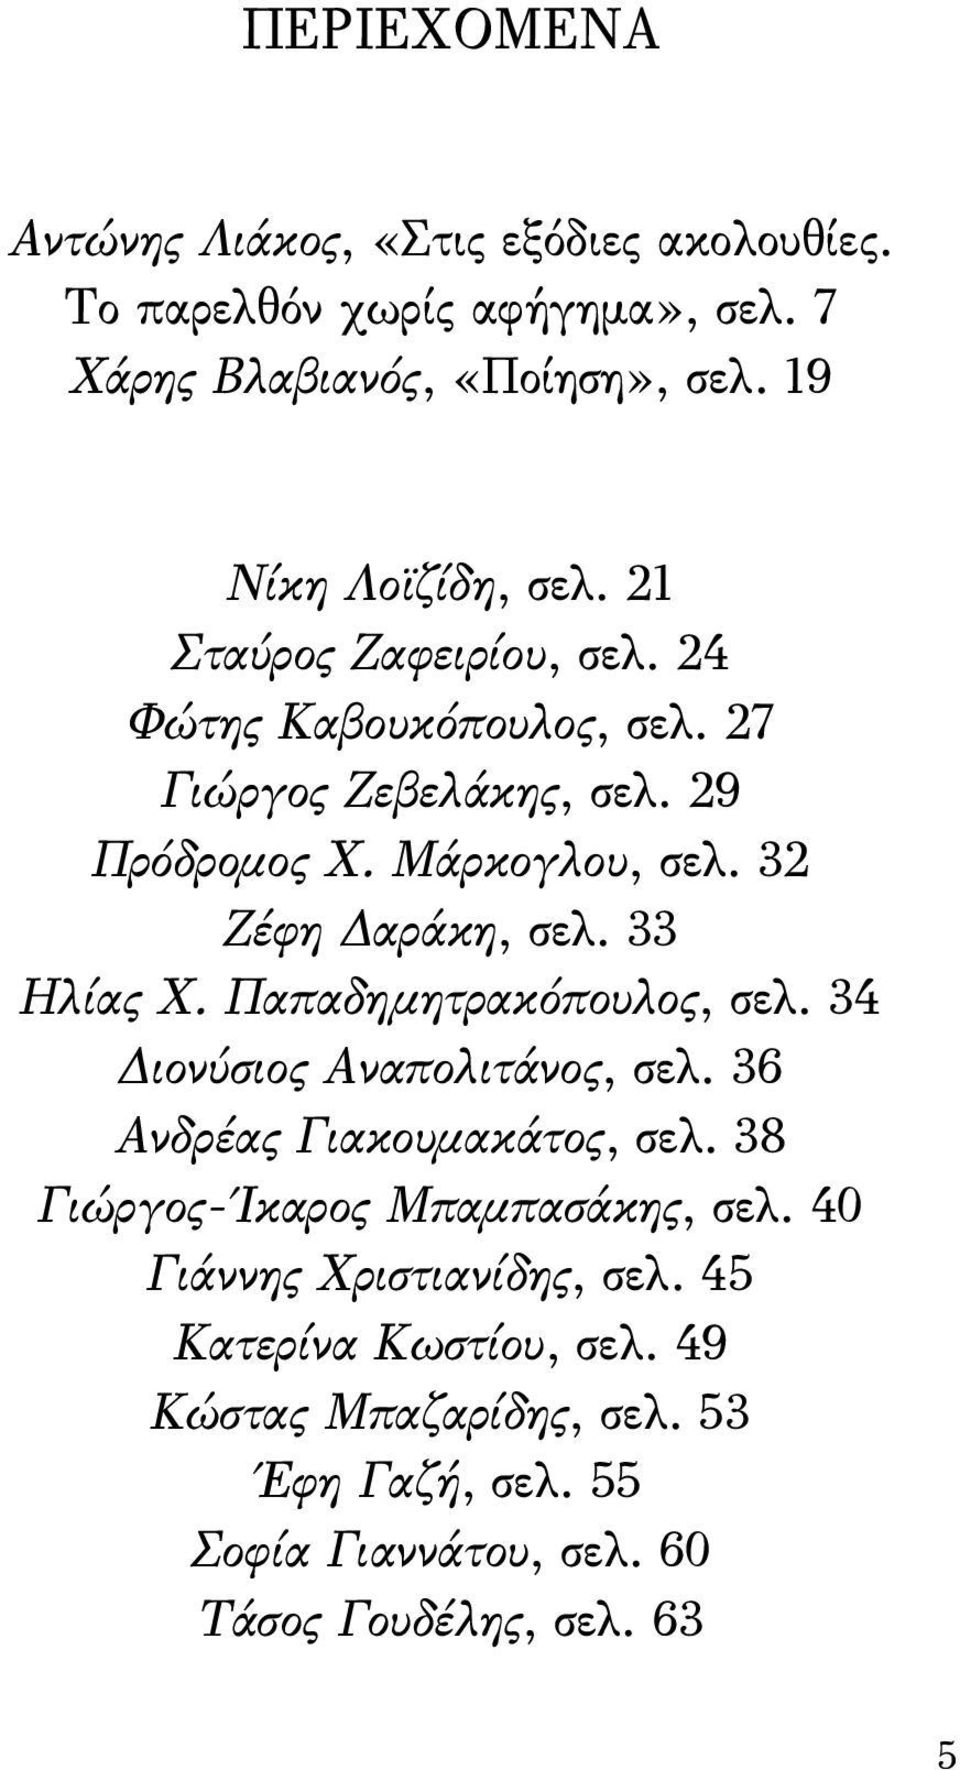 33 Ηλίας Χ. Παπαδημητρακόπουλος, σελ. 34 Διονύσιος Αναπολιτάνος, σελ. 36 Ανδρέας Γιακουμακάτος, σελ. 38 Γιώργος- Ίκαρος Μπαμπασάκης, σελ.